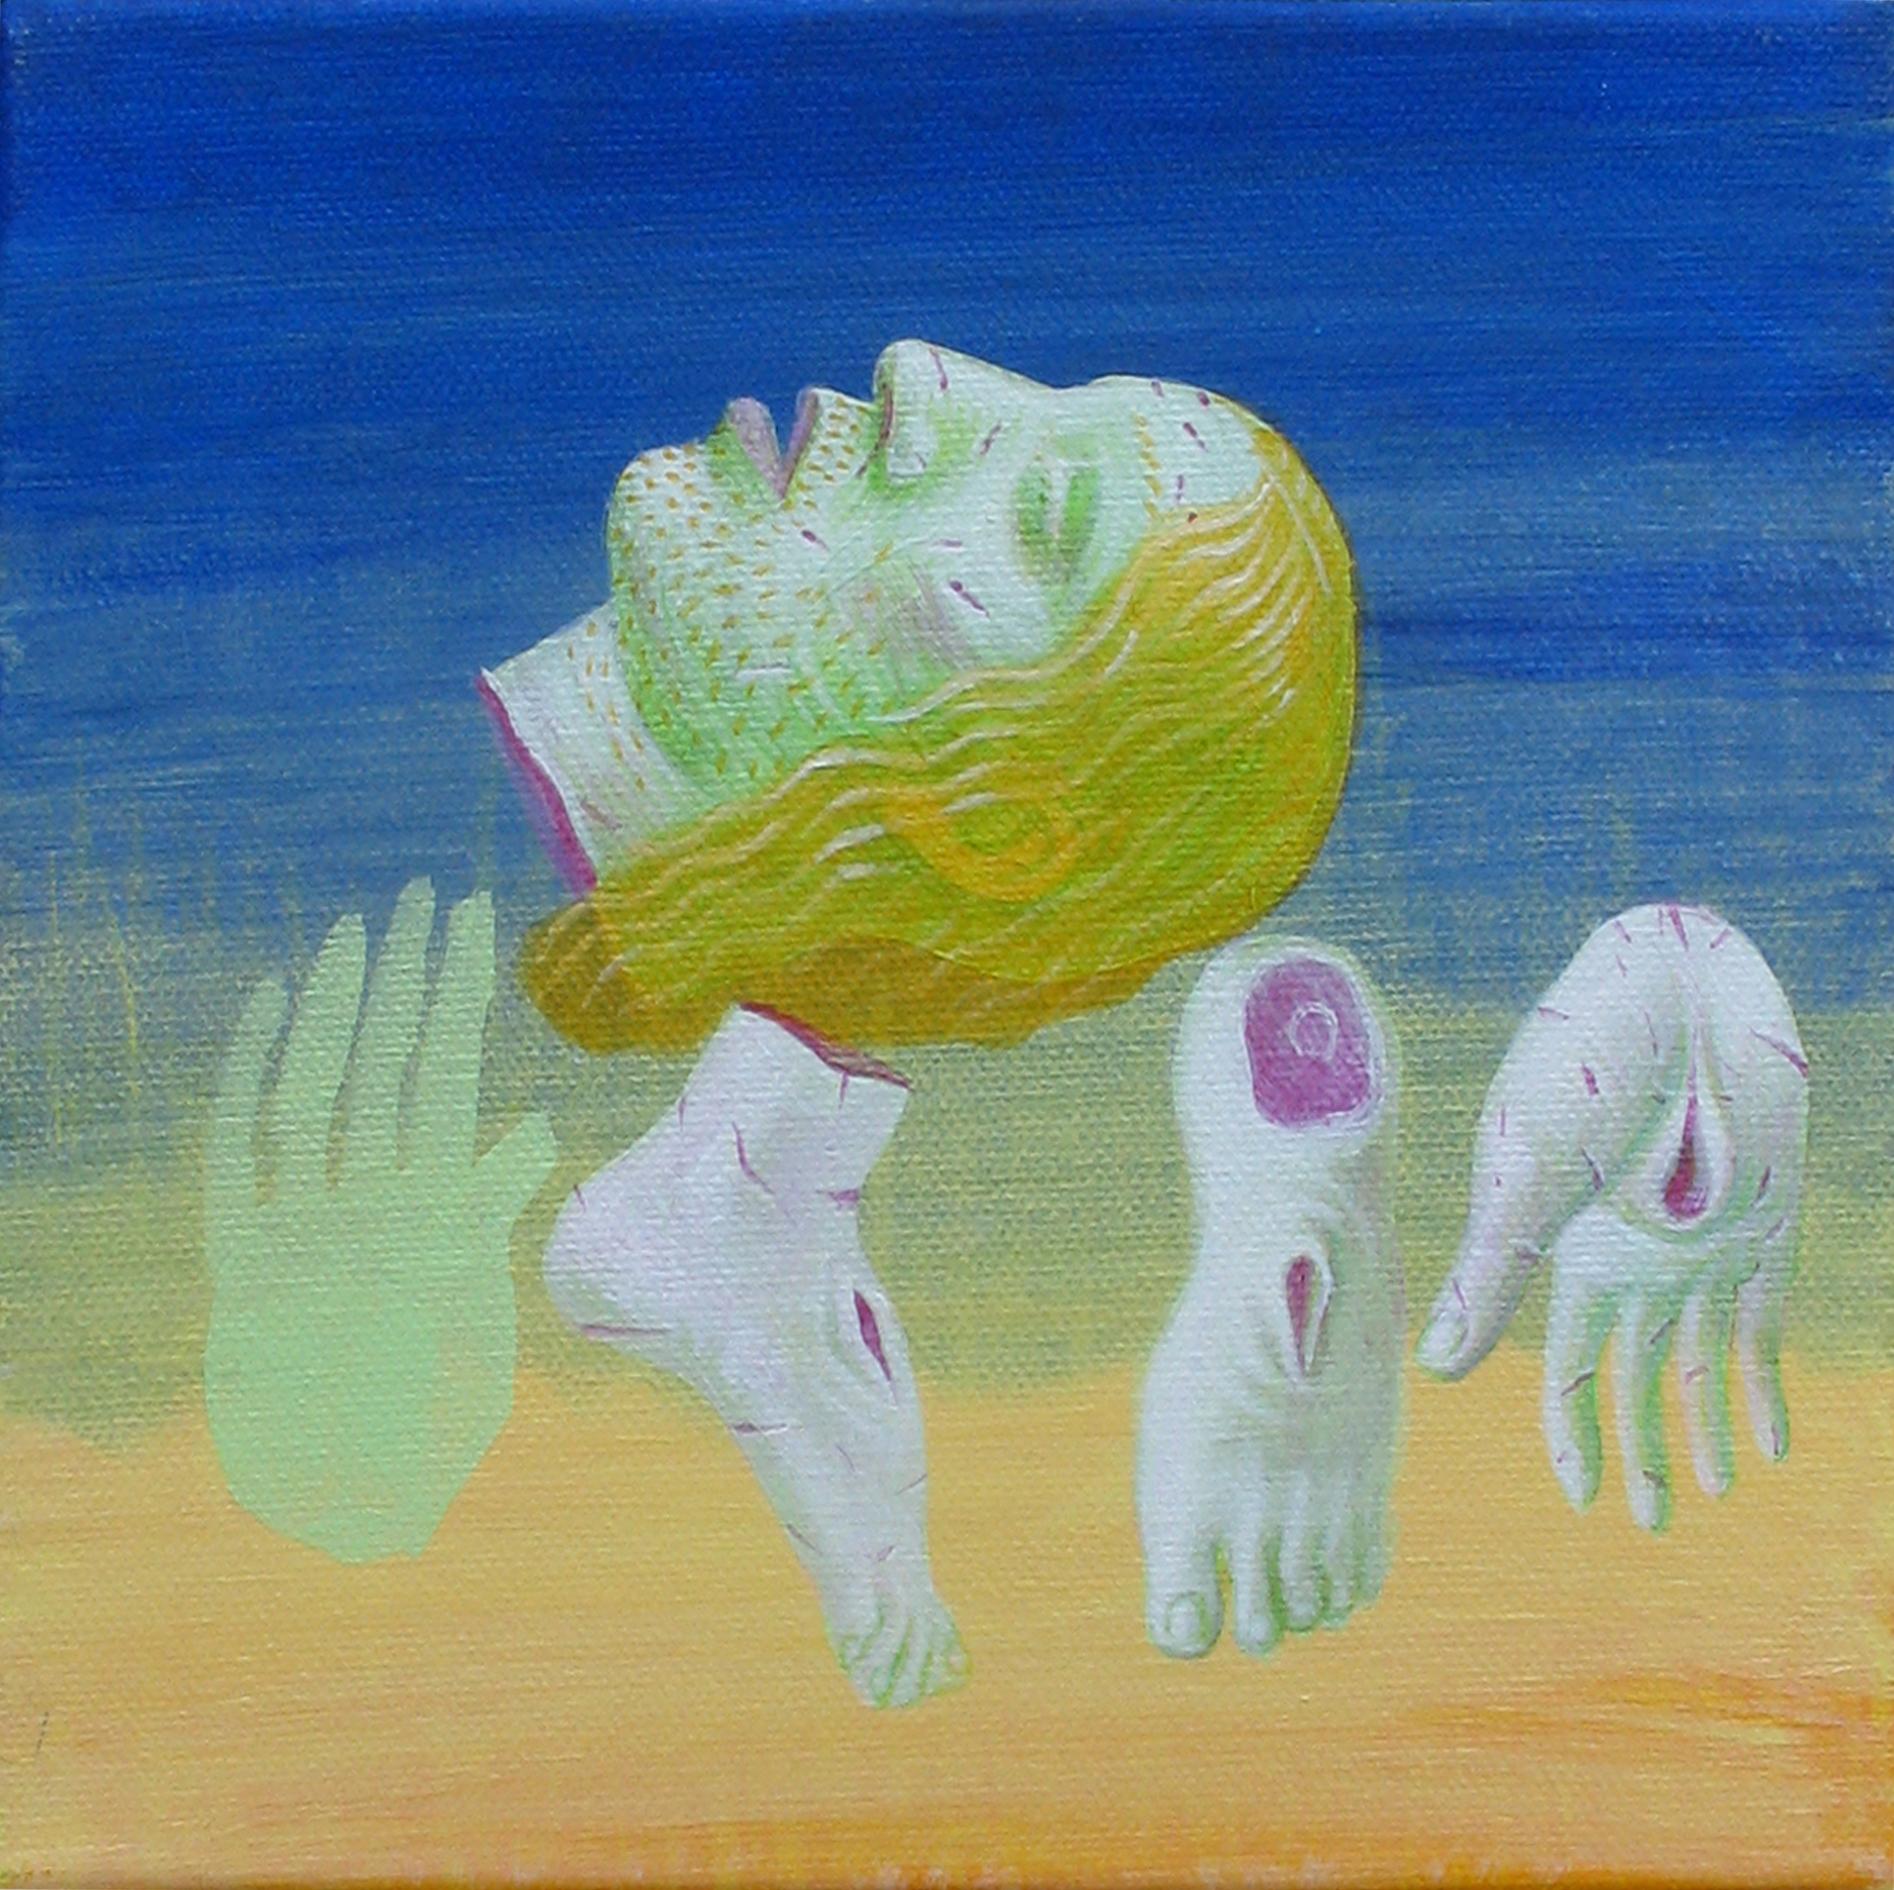 Kleiner Christus 5 – Zeitgenössische Kunst, figurativ, Gemälde, Divine, Blau, Grün